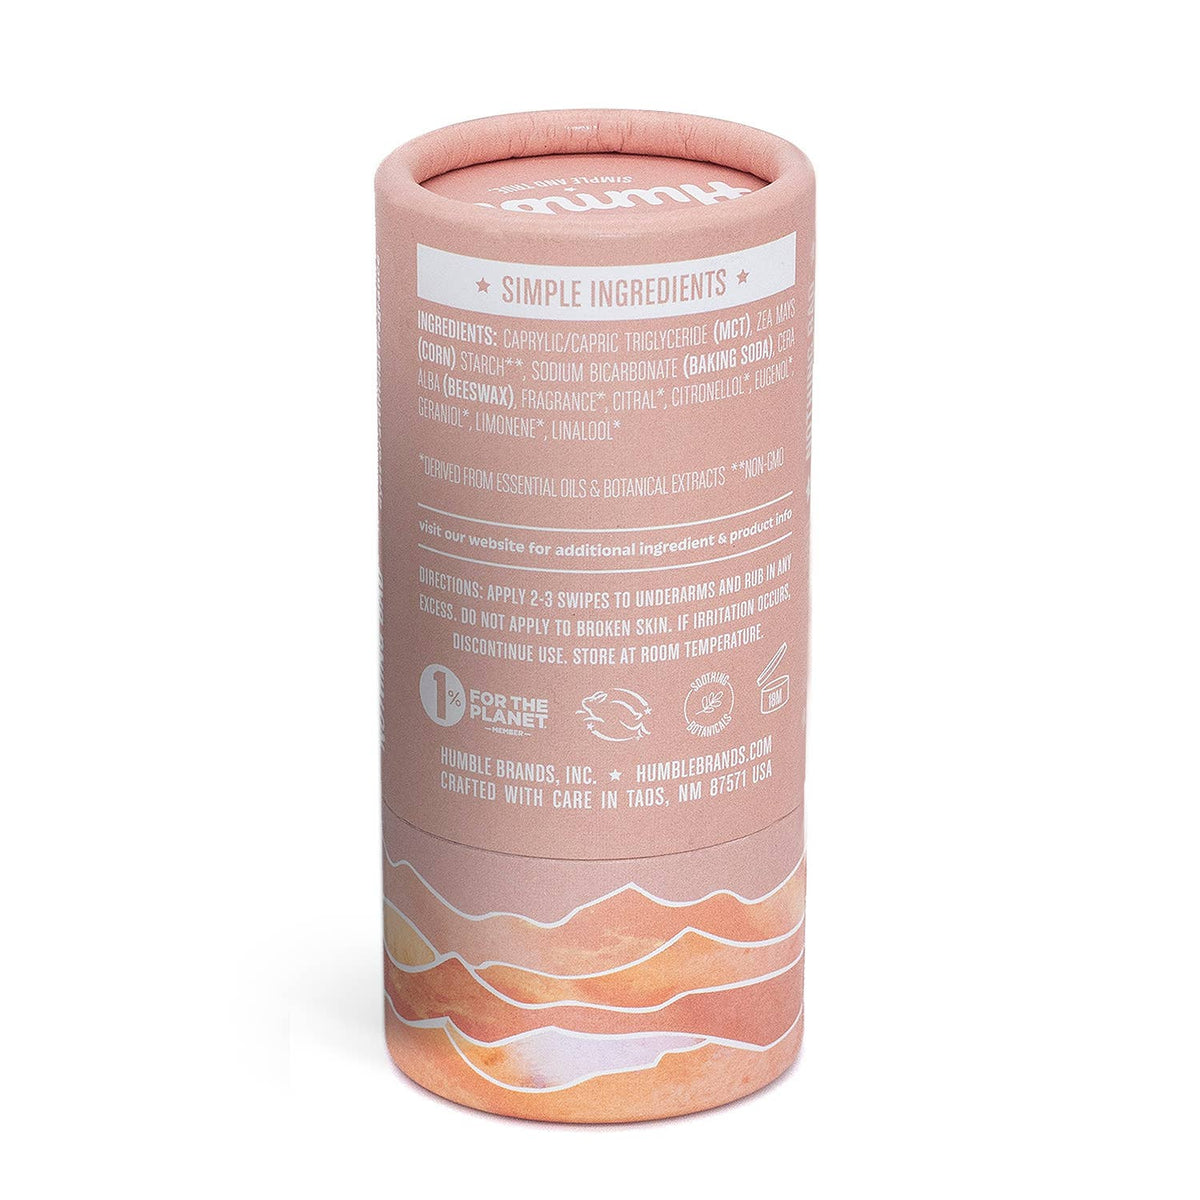 Moroccan Rose Deodorant - Natural, Plastic Free